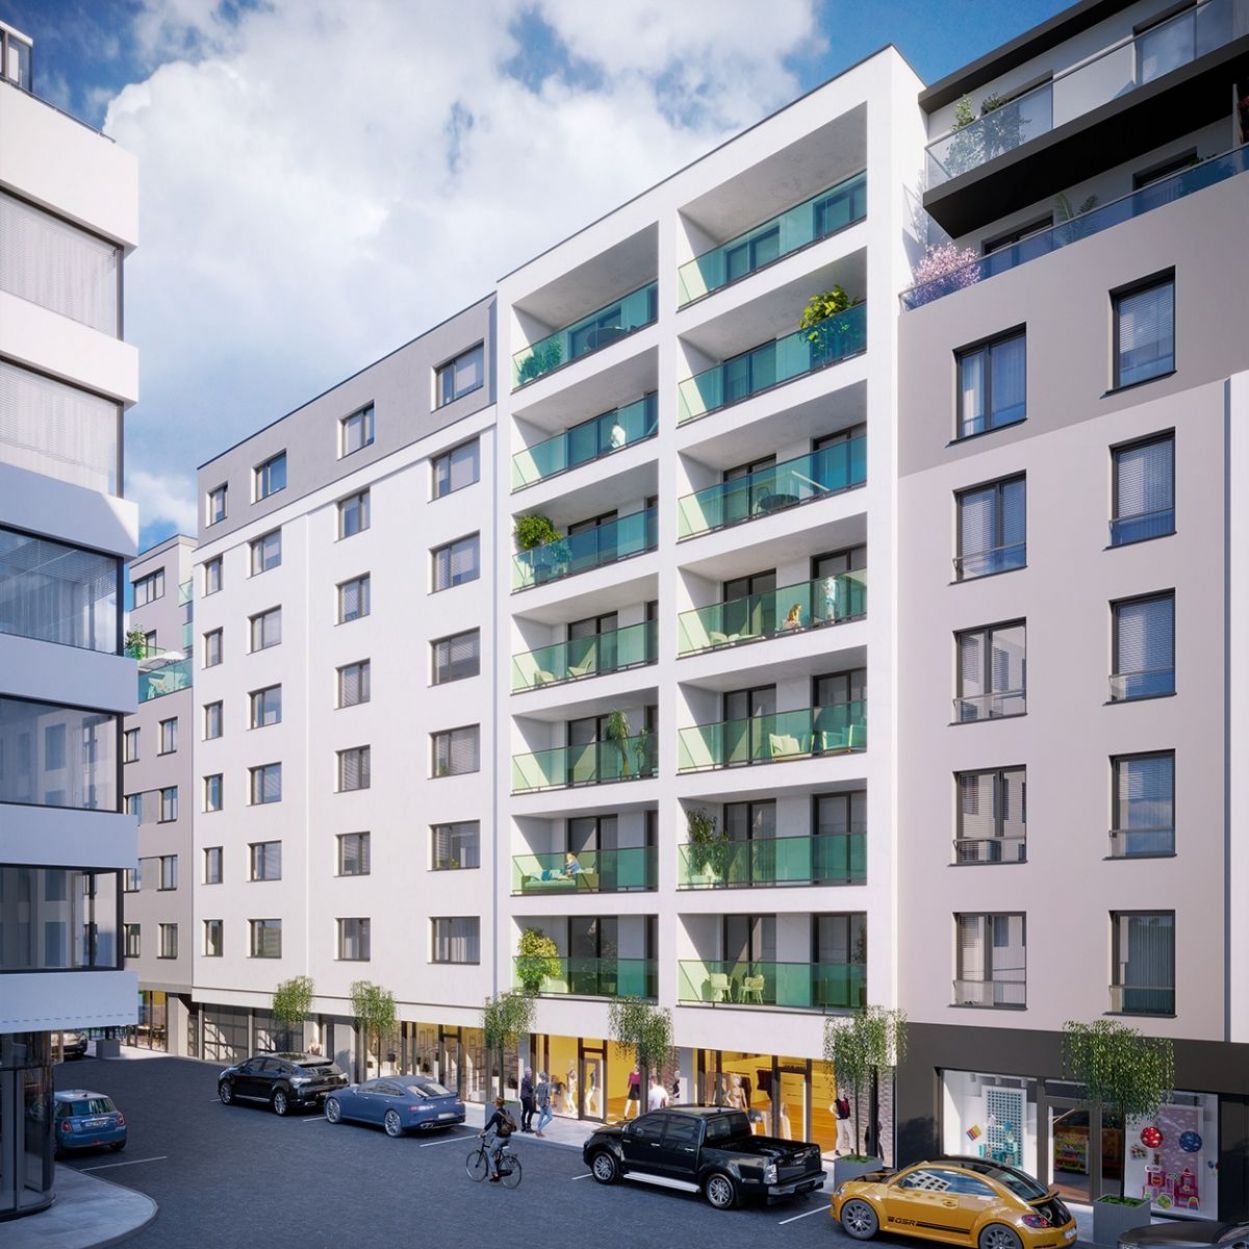 Novostavba bytu v Plzni v Poděbradově ulici, obrázek č. 1